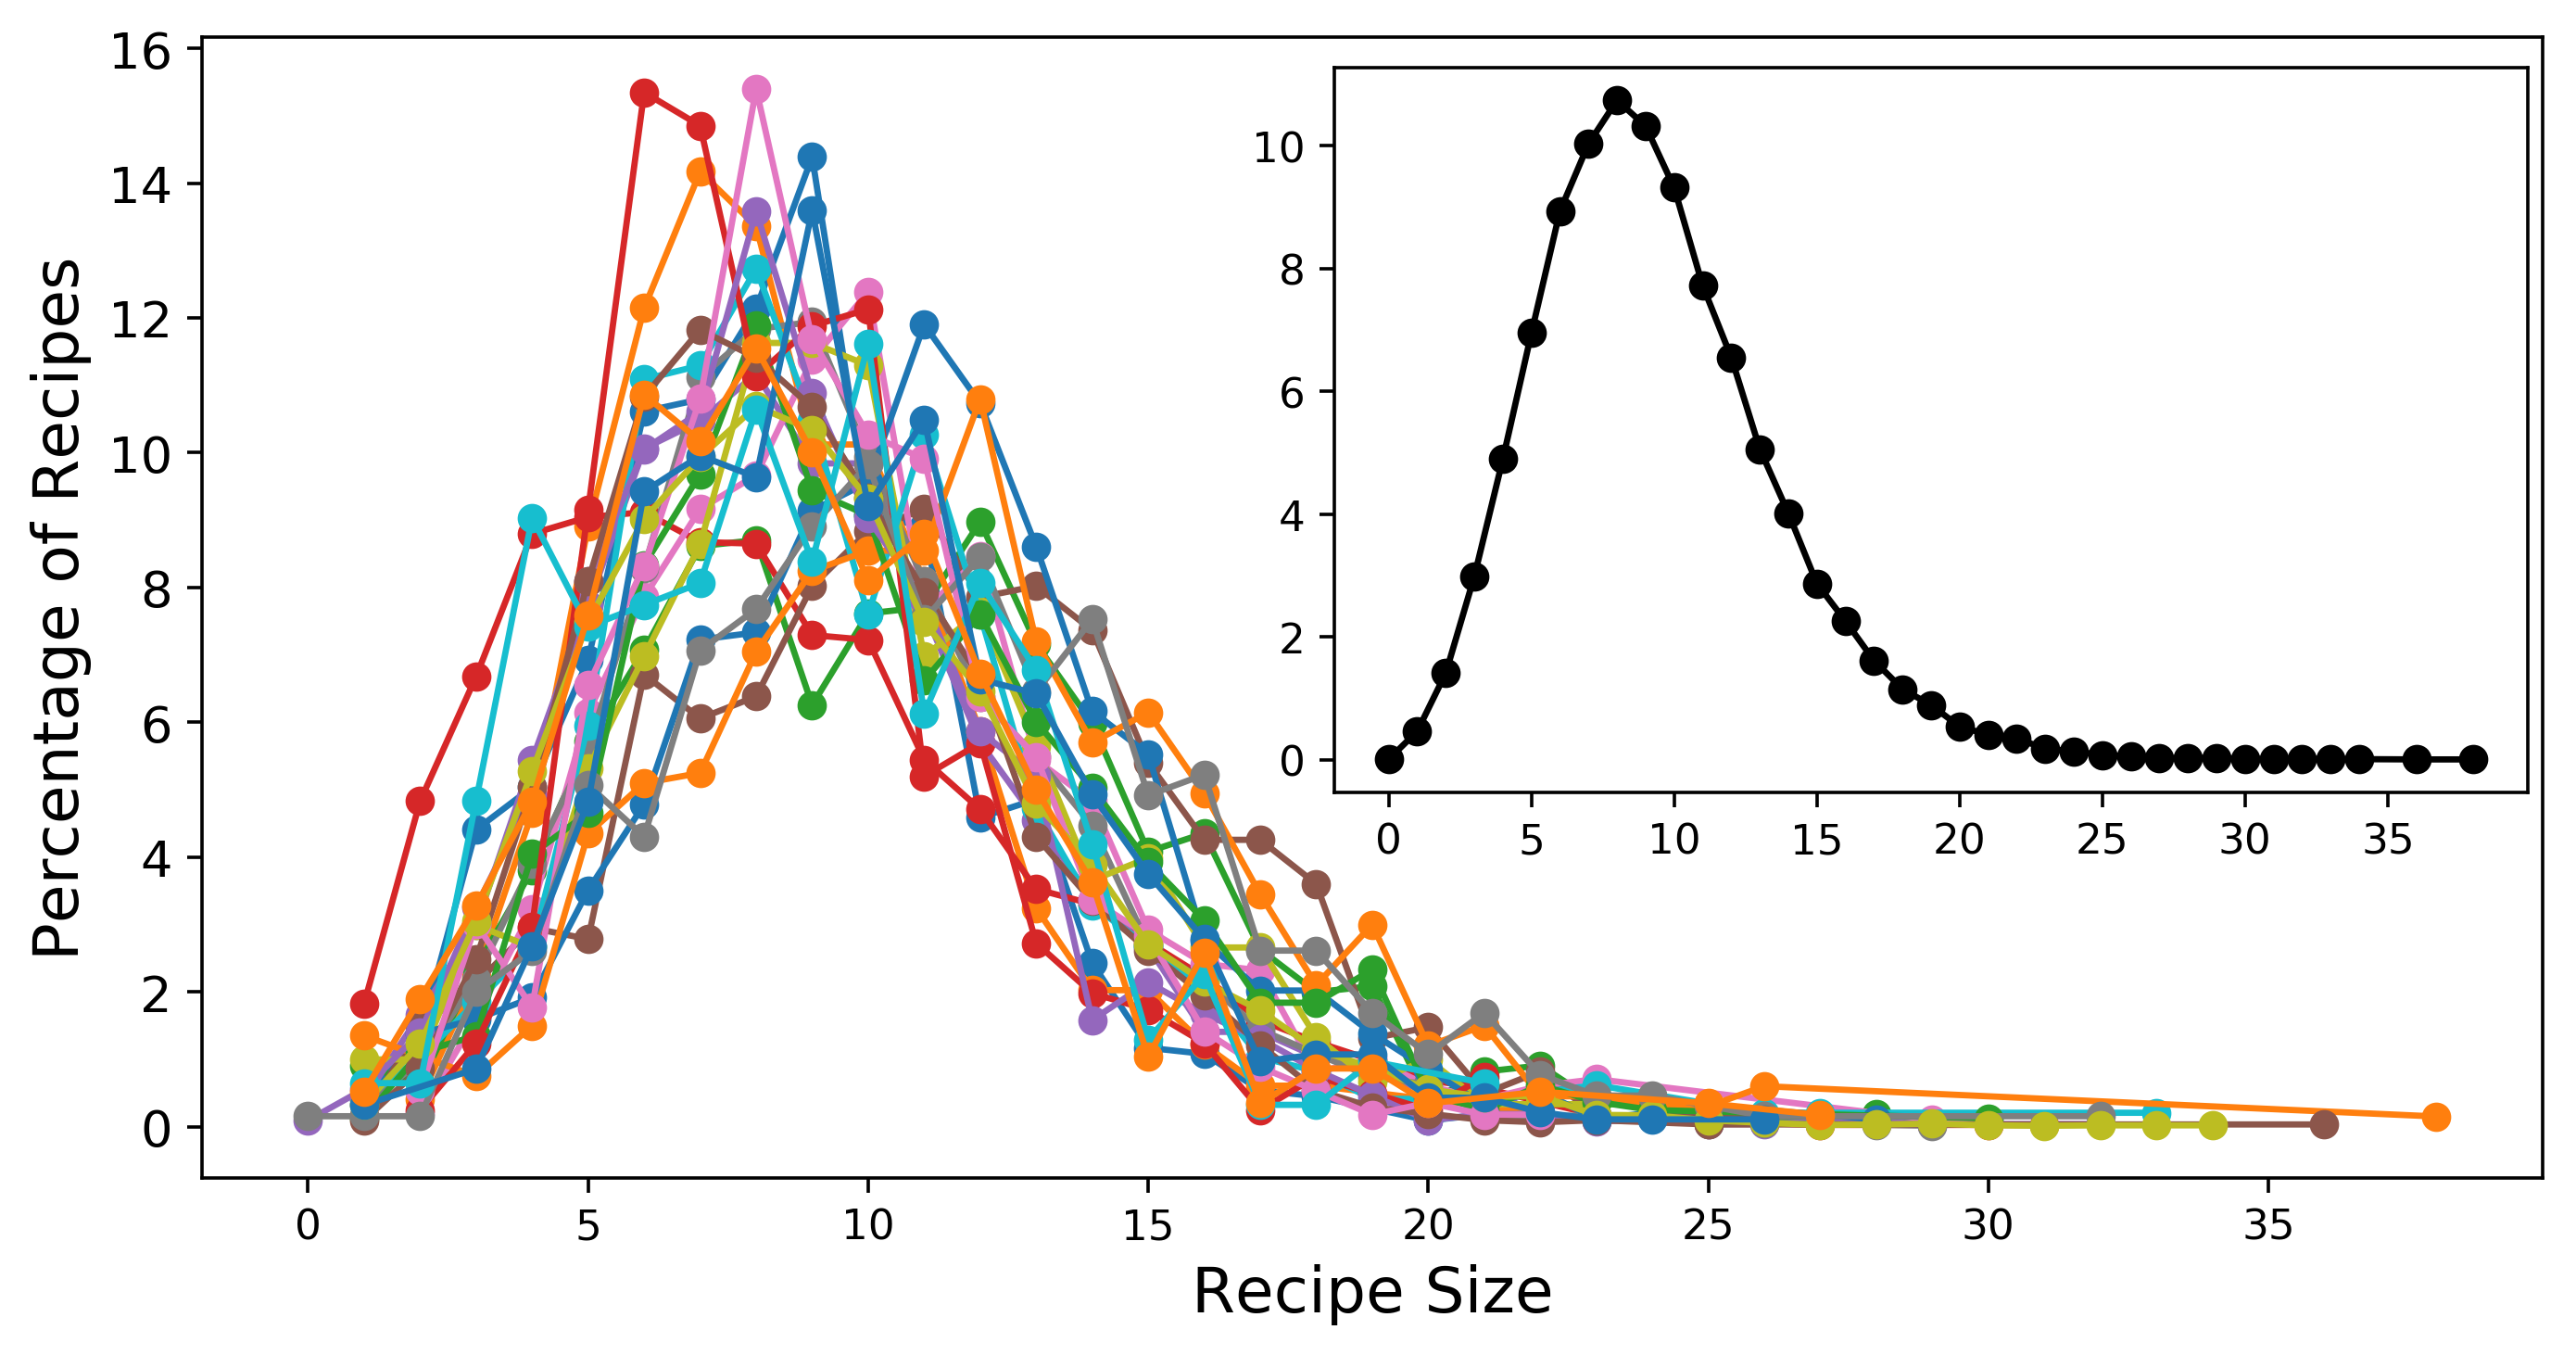 Cumulative Recipe Size Distribution